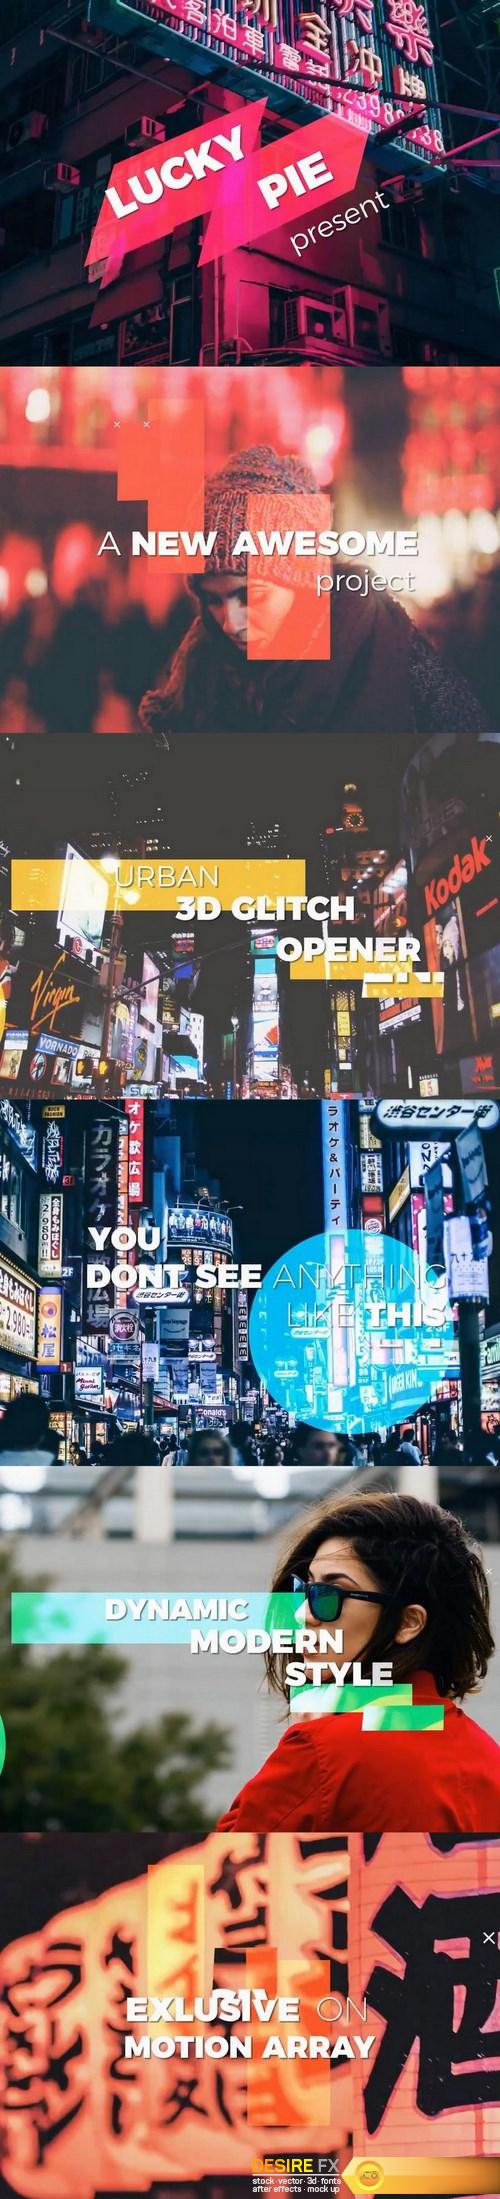 Urban-3d-glitch-opener-37289